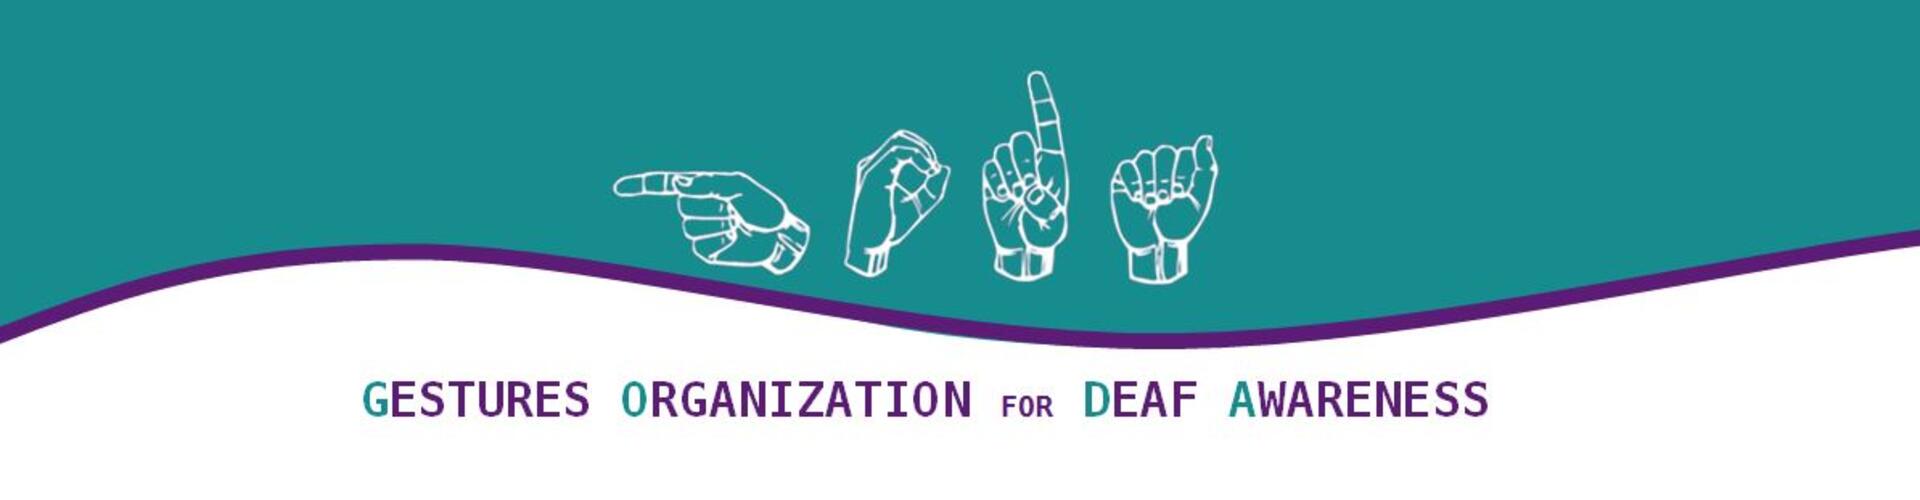 Gestures: Organization for Deaf Awareness